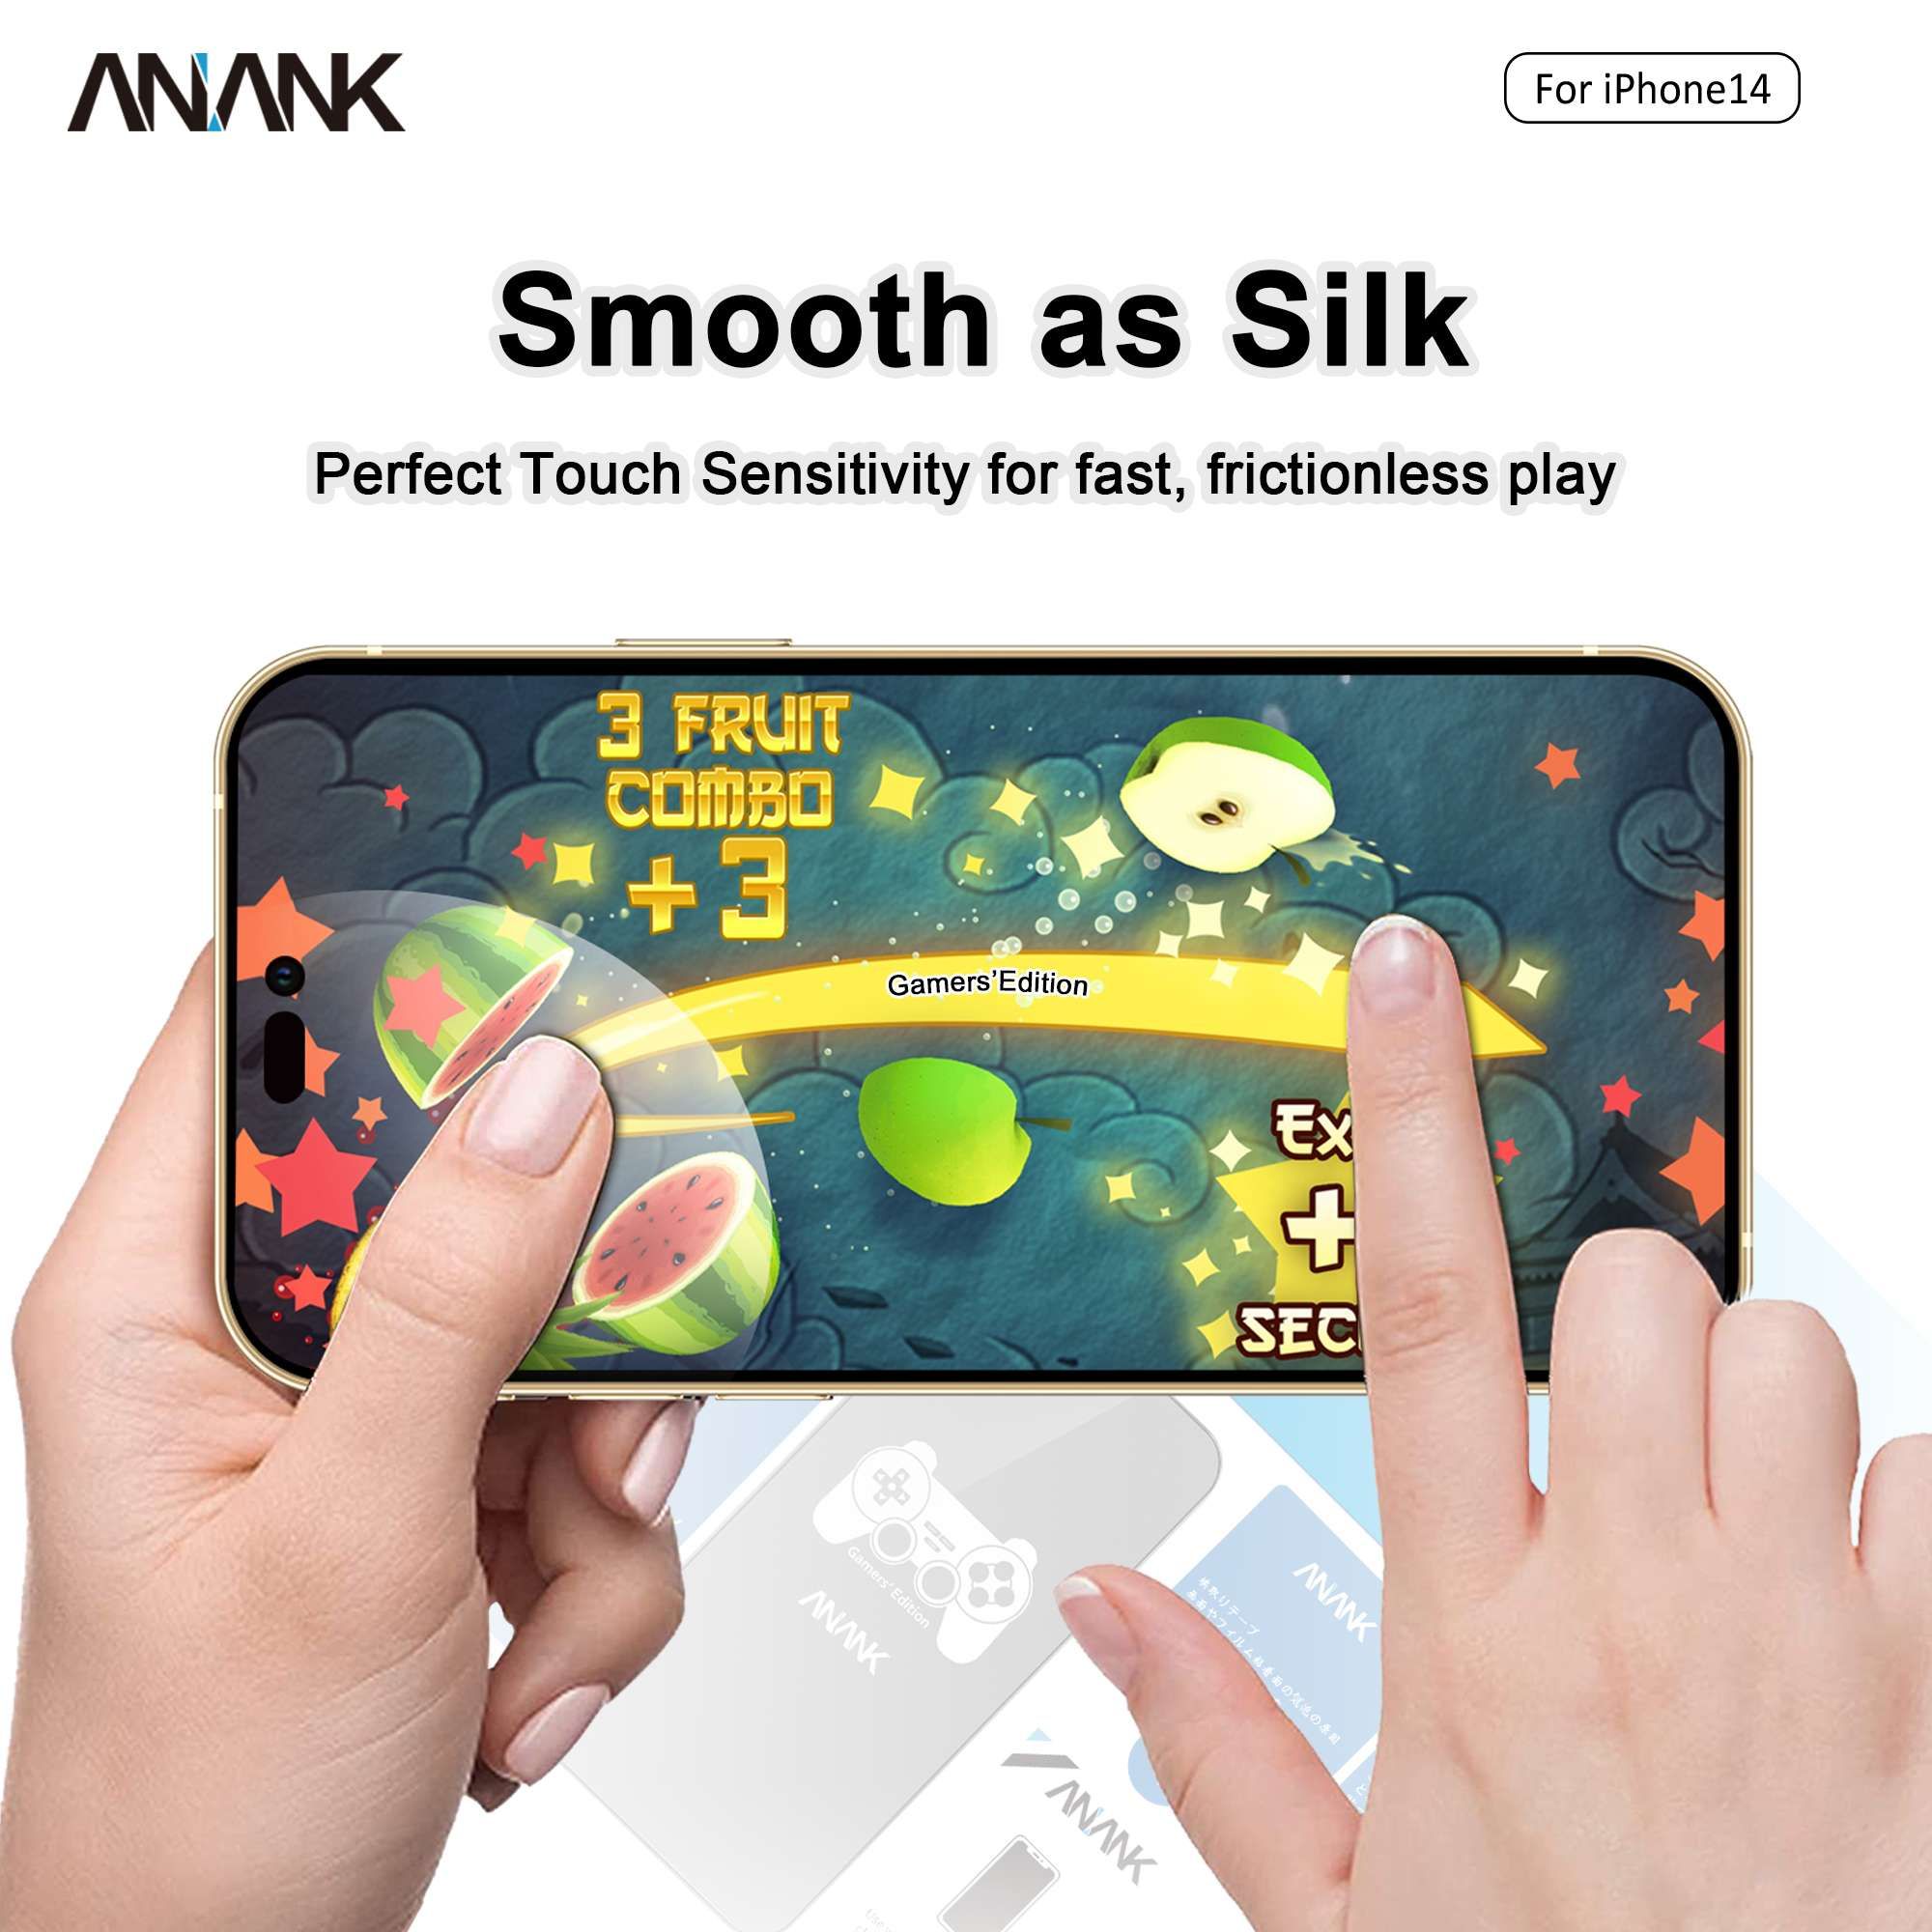  Dán Cường Lực iPhone 14/14 Plus/14 Pro/14 Pro Max ANANK 2.5D Full Chống Vân Tay 